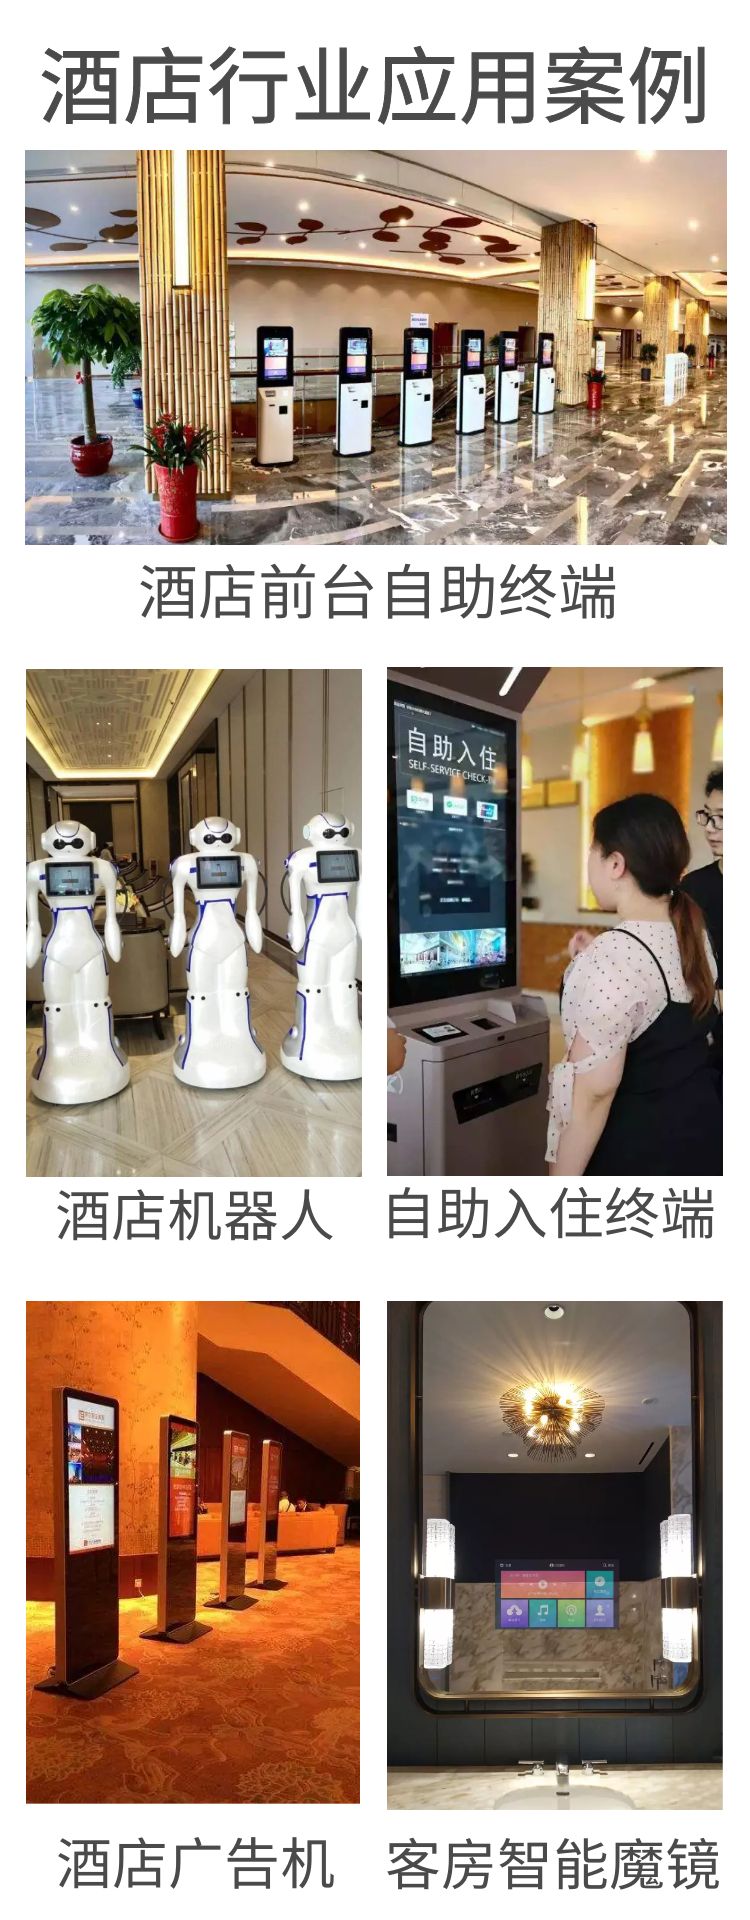 智慧酒店智能客房自助入住系统应用案例，如自助入住系统、酒店机器人、酒店广告机、客房智能魔镜等等。